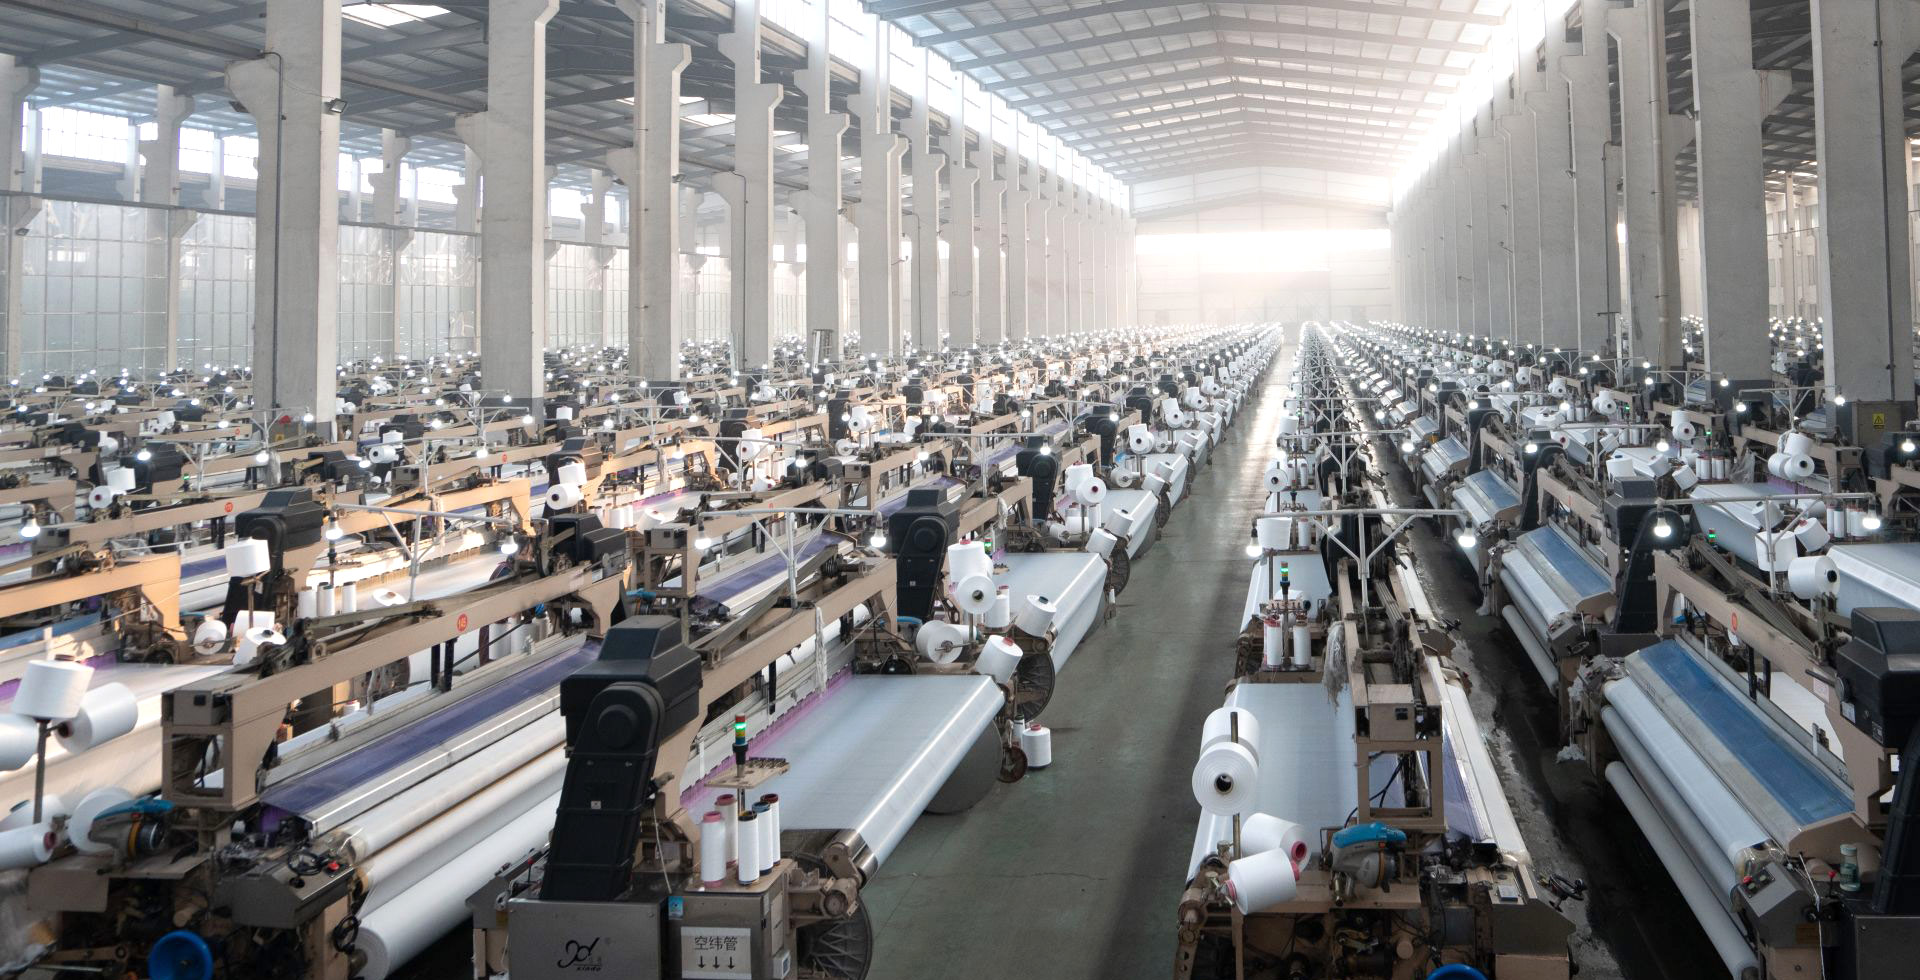 集紡絲、加彈、織布、印花加工、國內外銷售一體化的企業